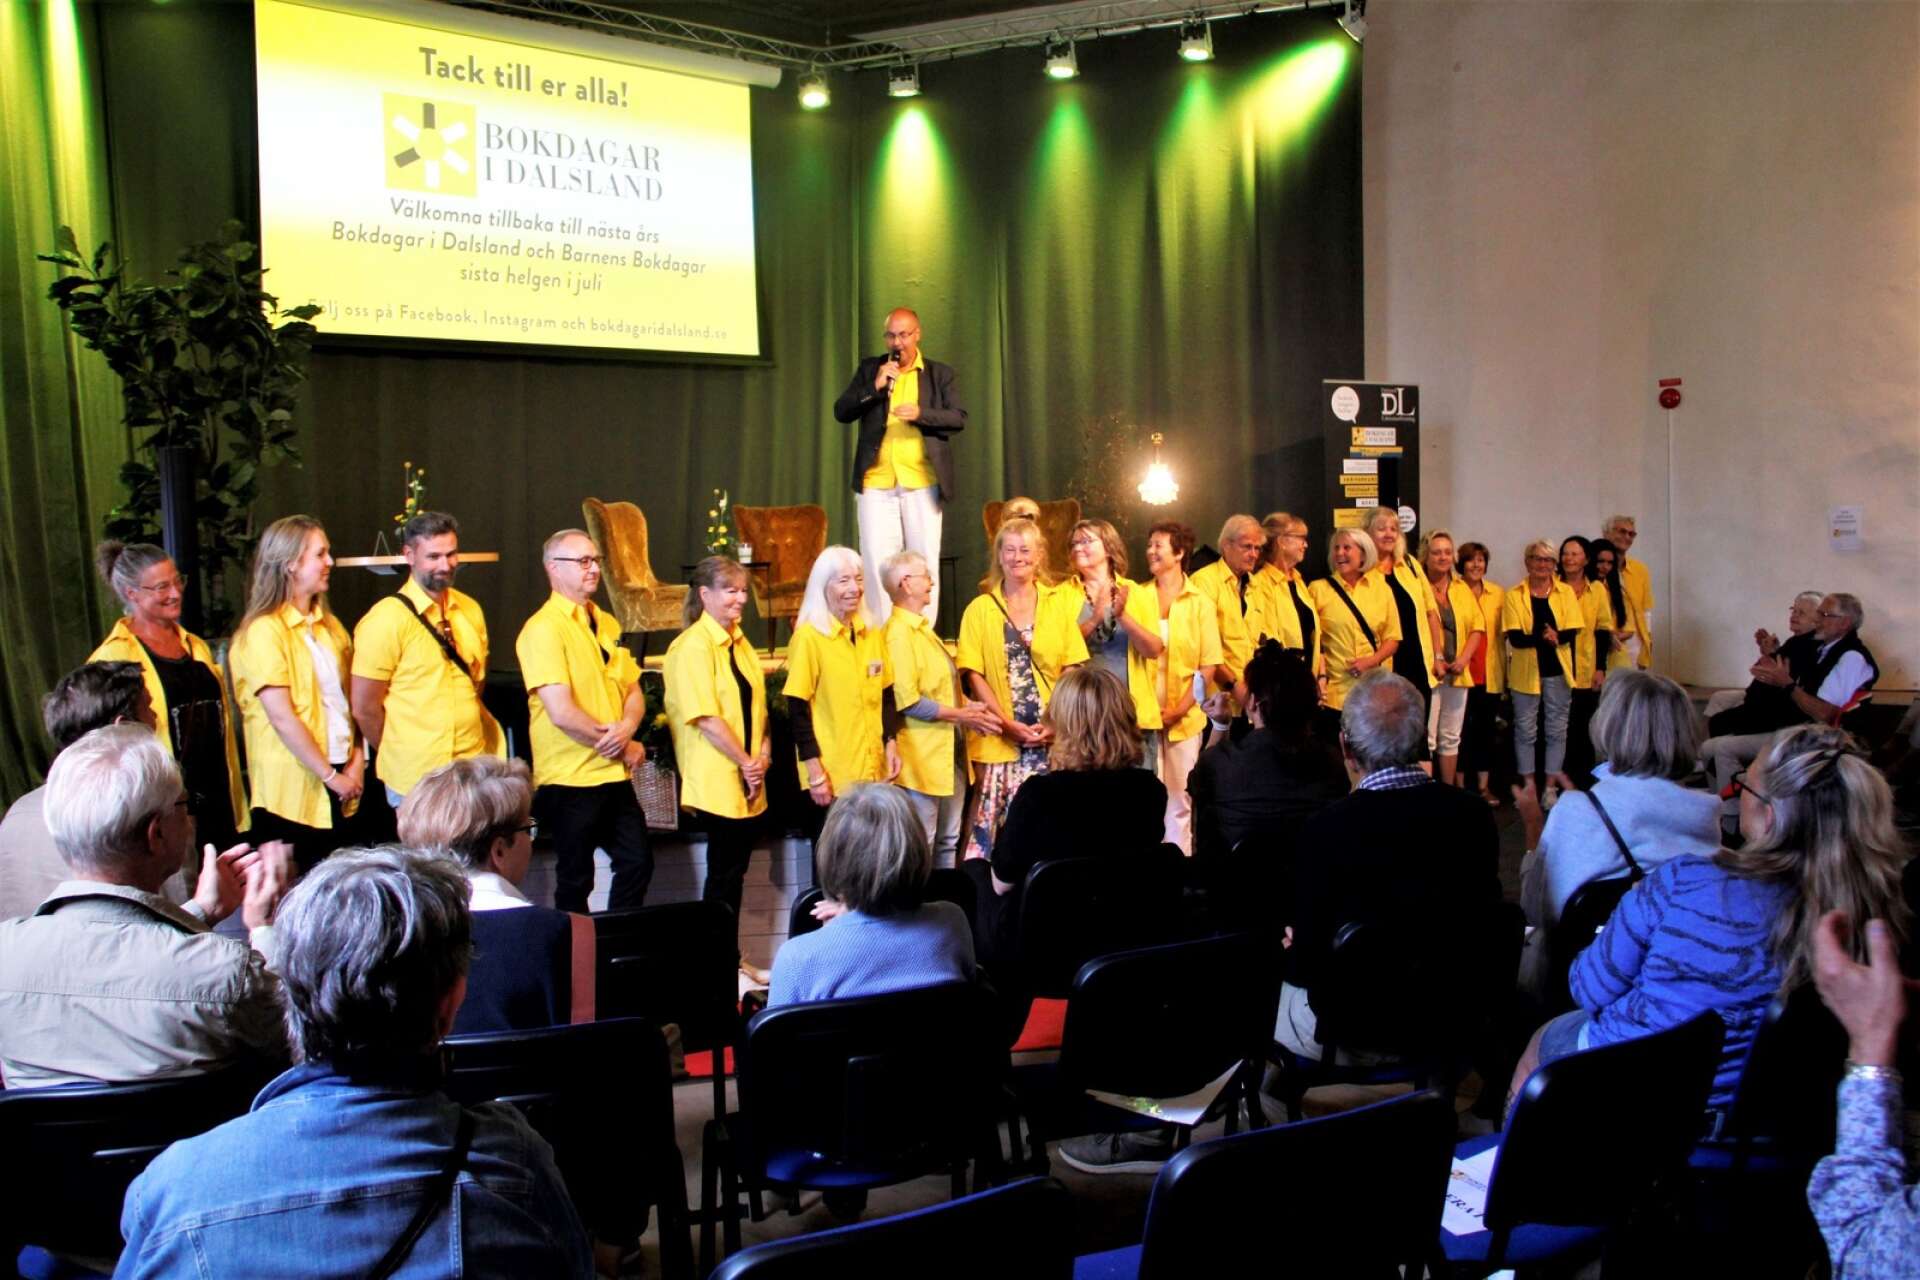 Alla närvarande medarbetare i lättigenkännliga gula skjortor tackades för sitt arbete av verksamhetsledaren Victor Estby.